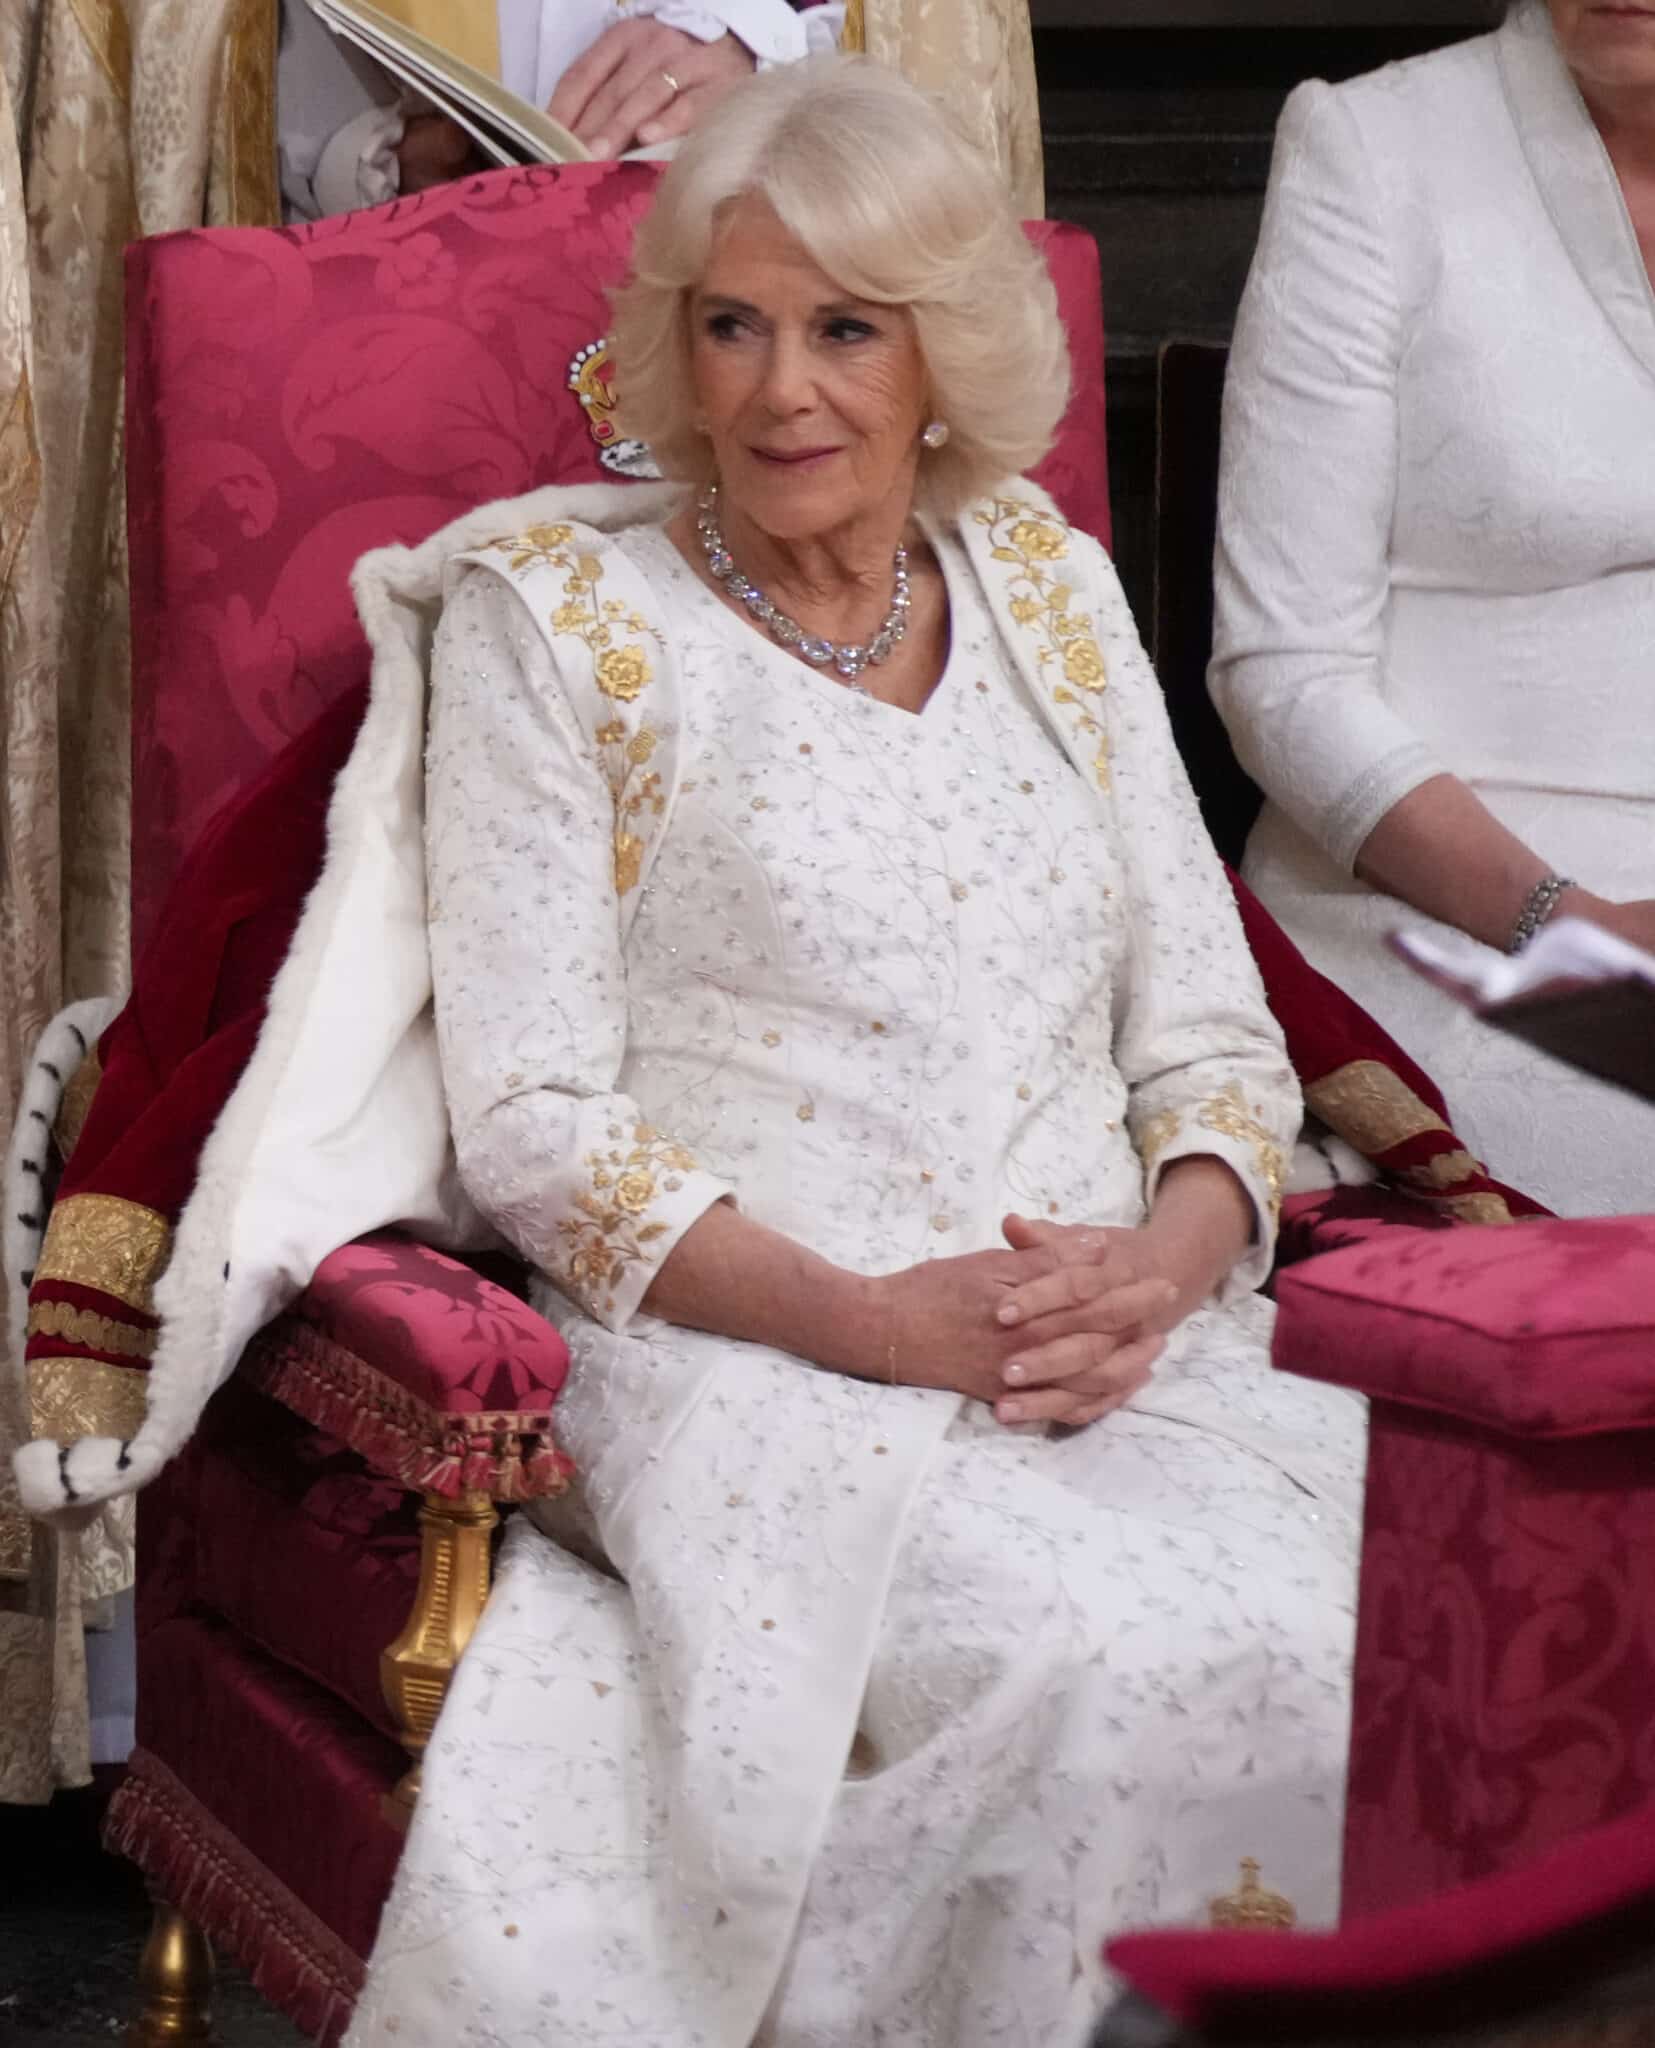 La reina Camilla ha esperado pacientemente su turno de coronación, observando cómo era el proceso de Carlos III